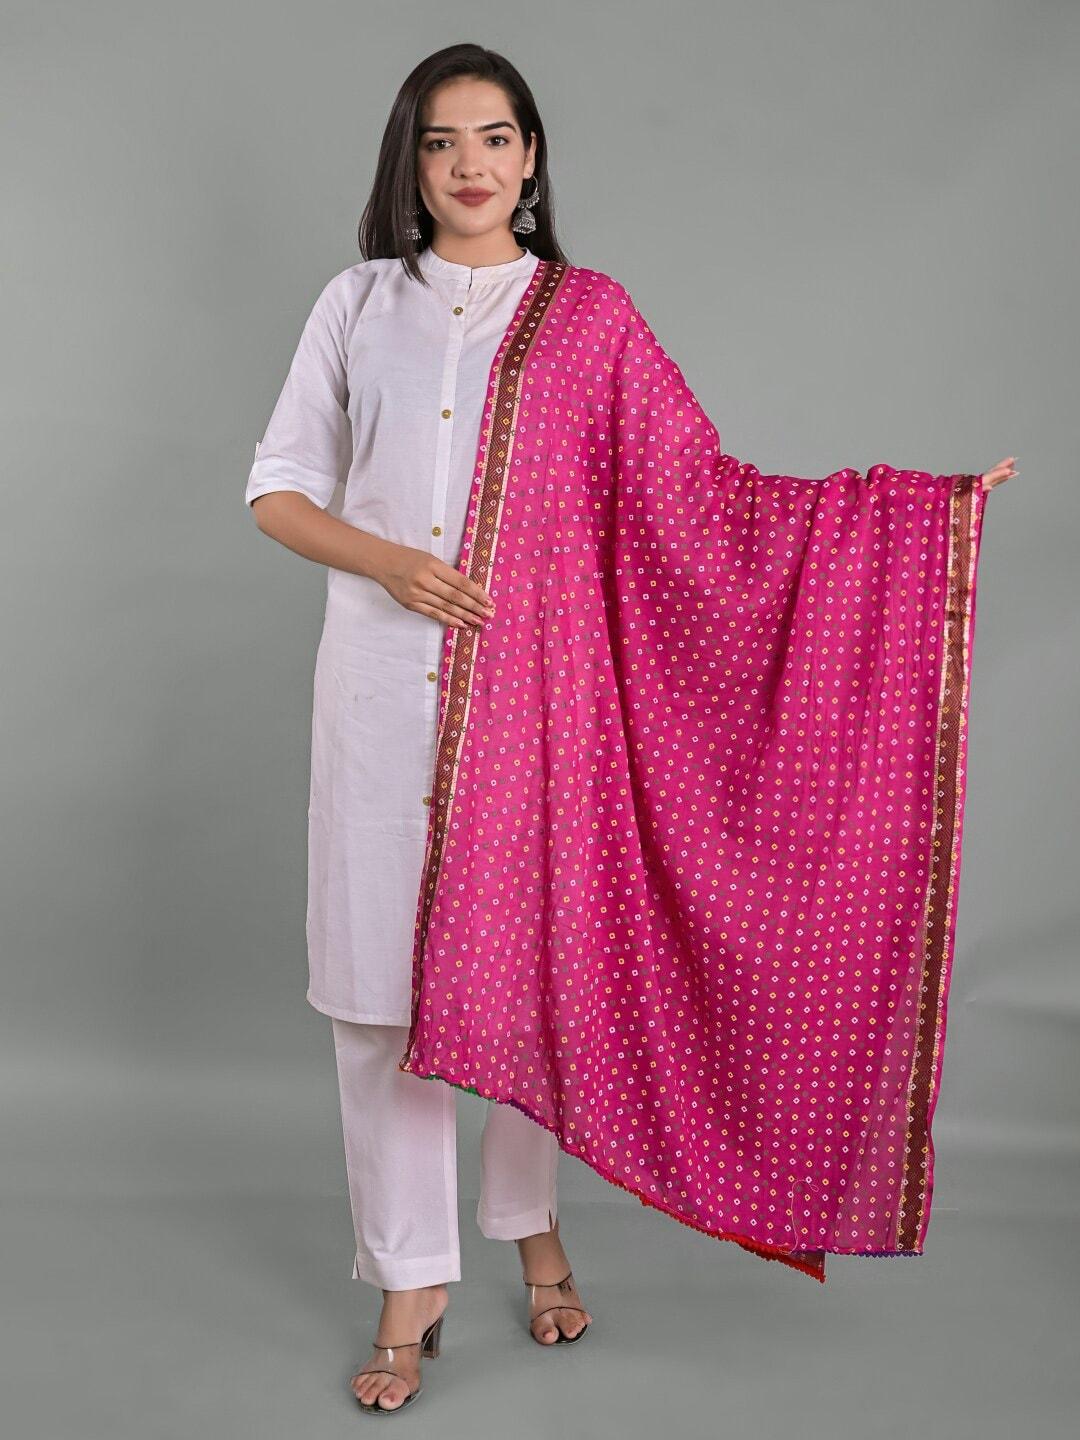 Apratim Pink & White Printed Bandhani Dupatta